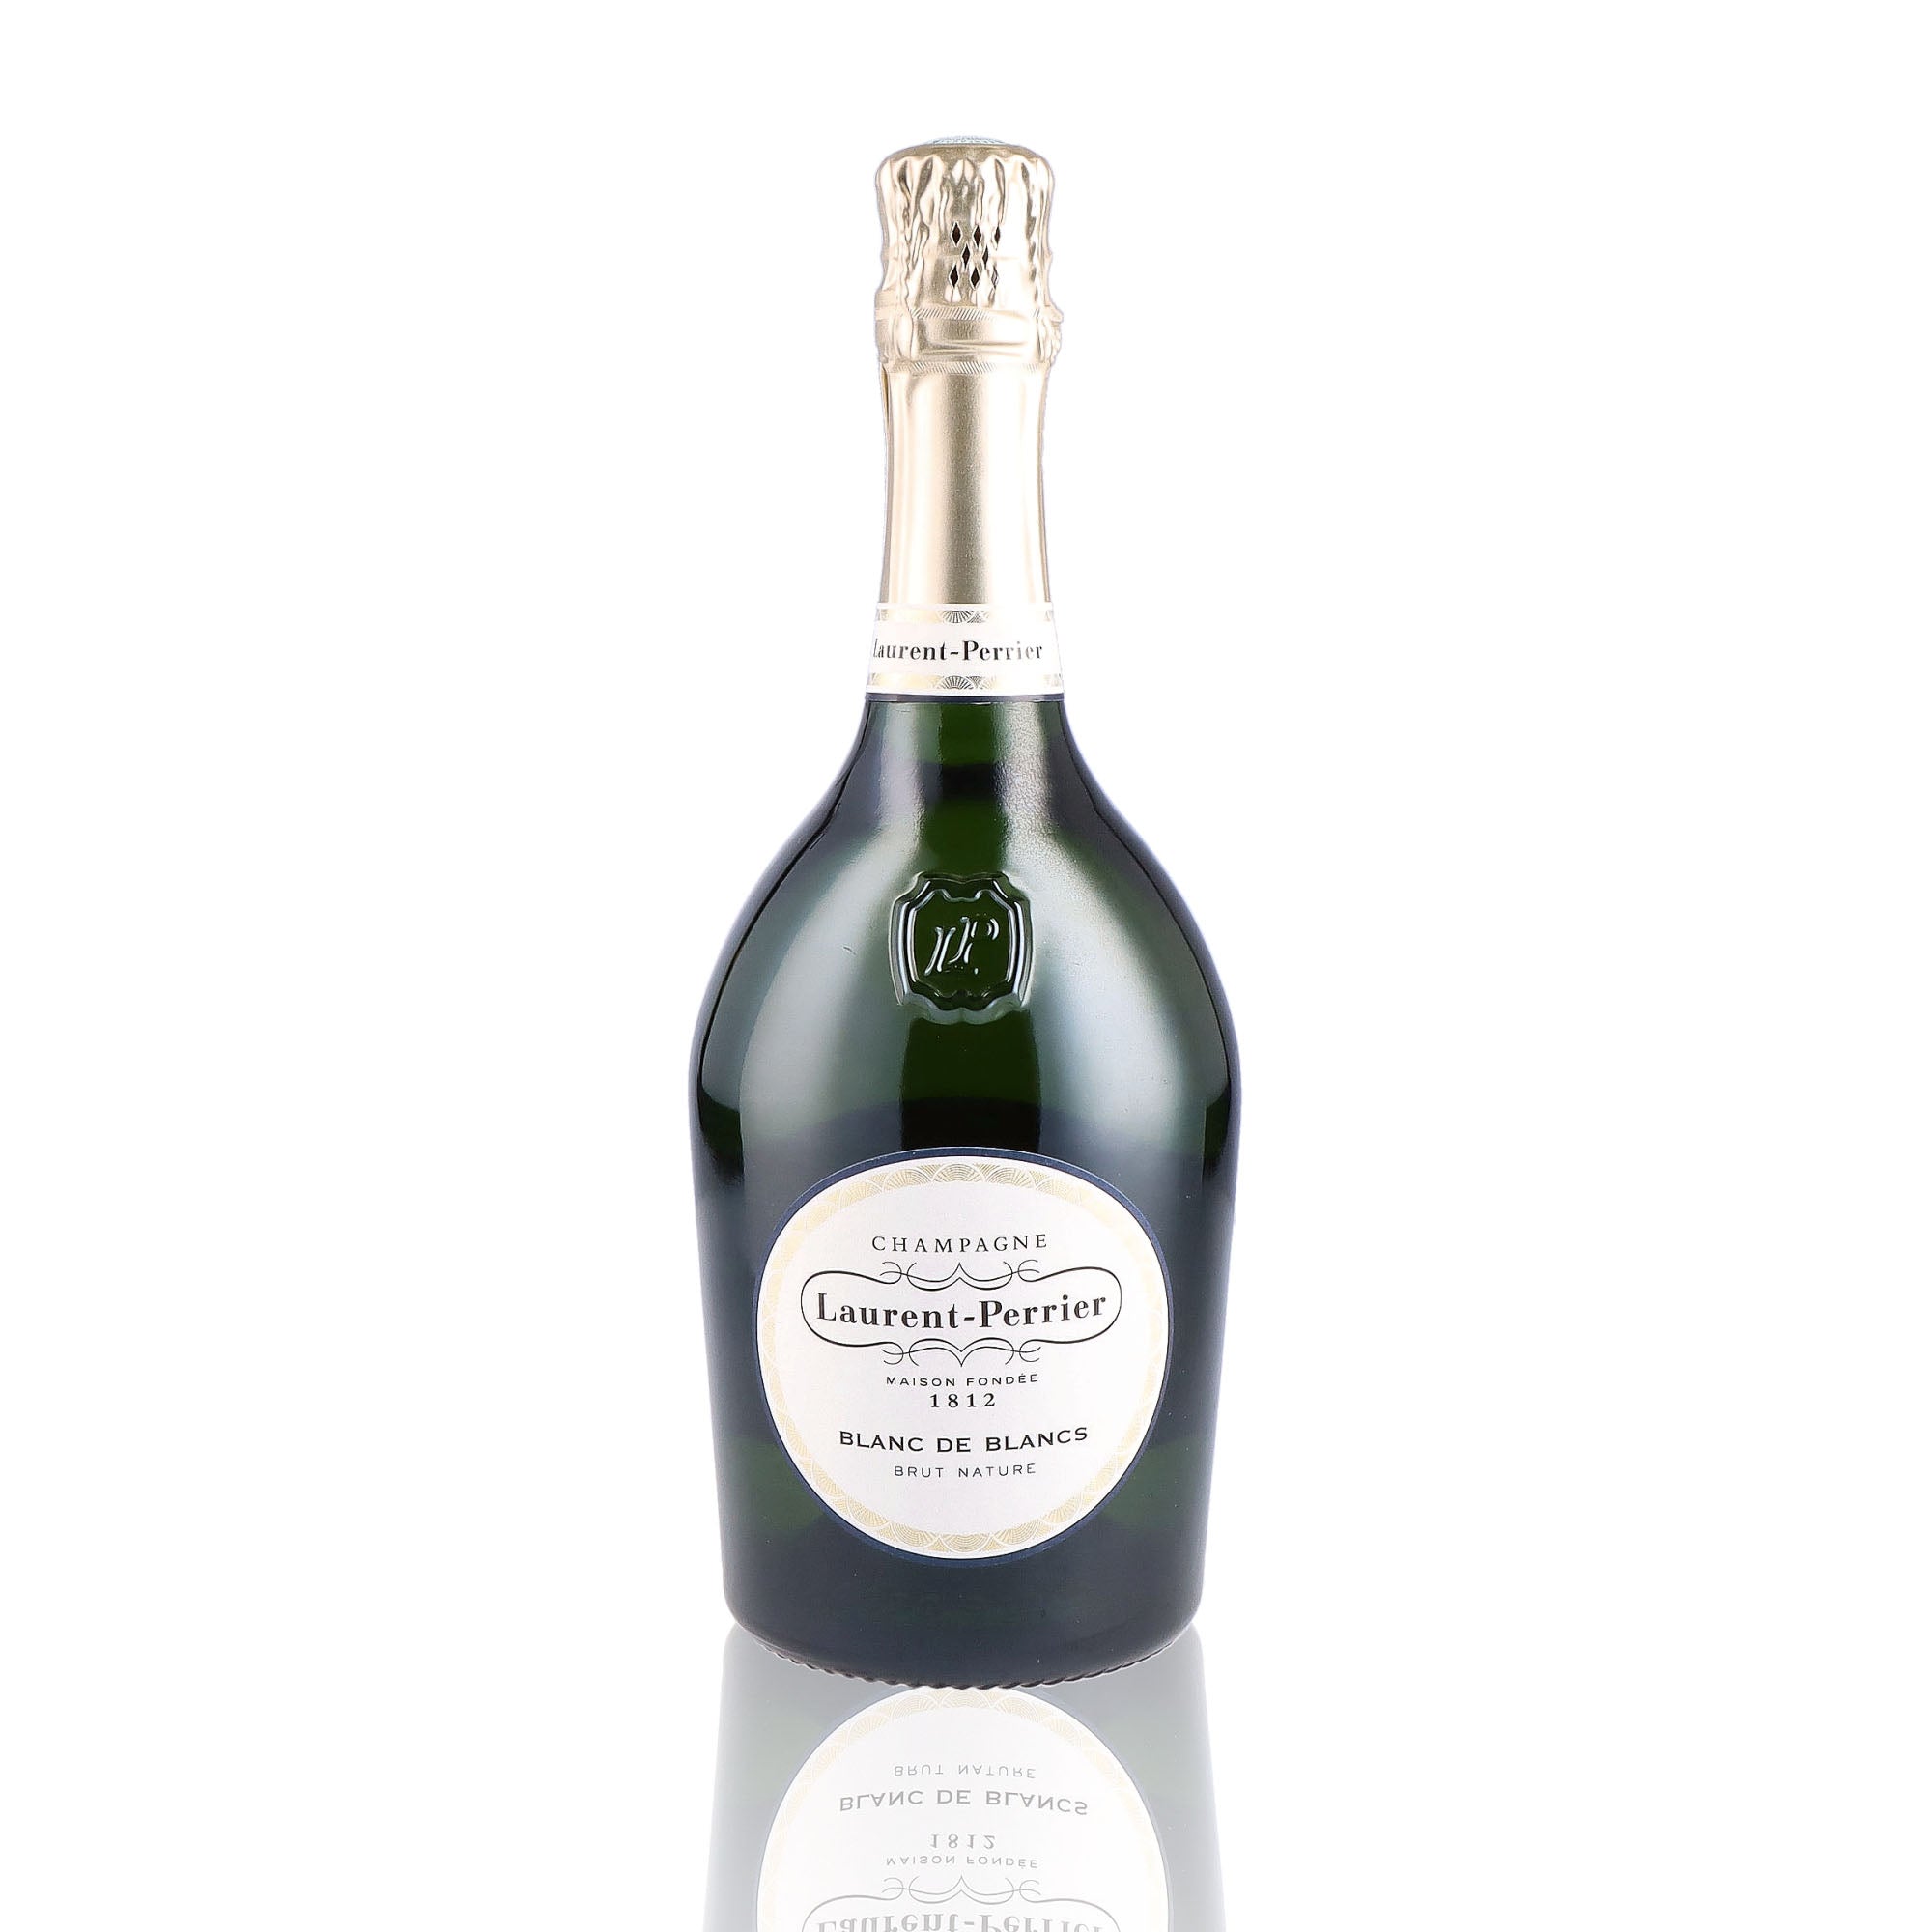 Une bouteille de champagne de la marque Laurent Perrier, de type blanc de blancs brut nature.